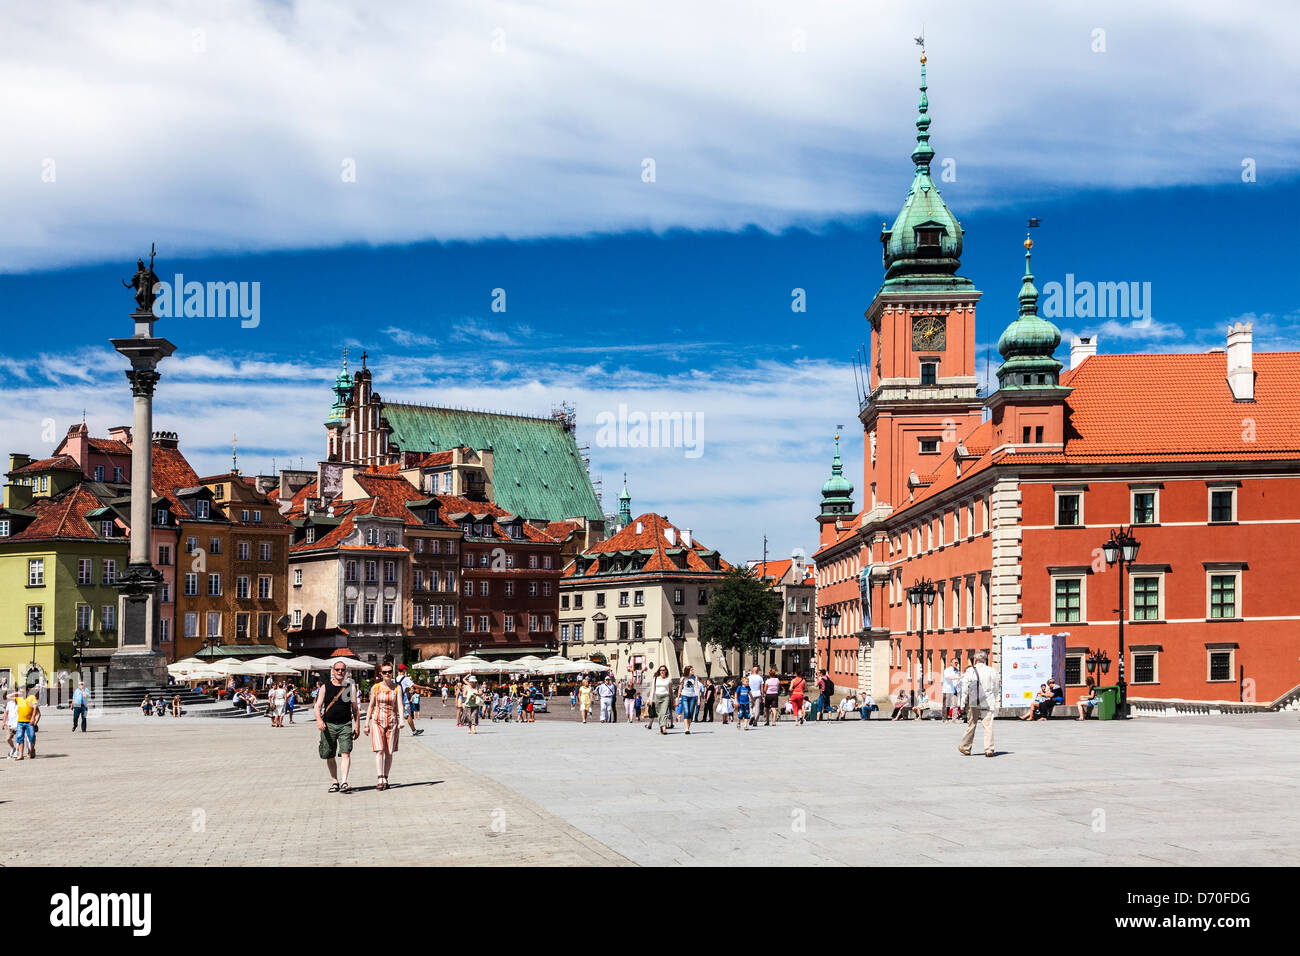 Plac Zamkowy oder Schlossplatz in Warschaus Altstadt, Stare Miasto auf dem Höhepunkt der Sommersaison. Stockfoto